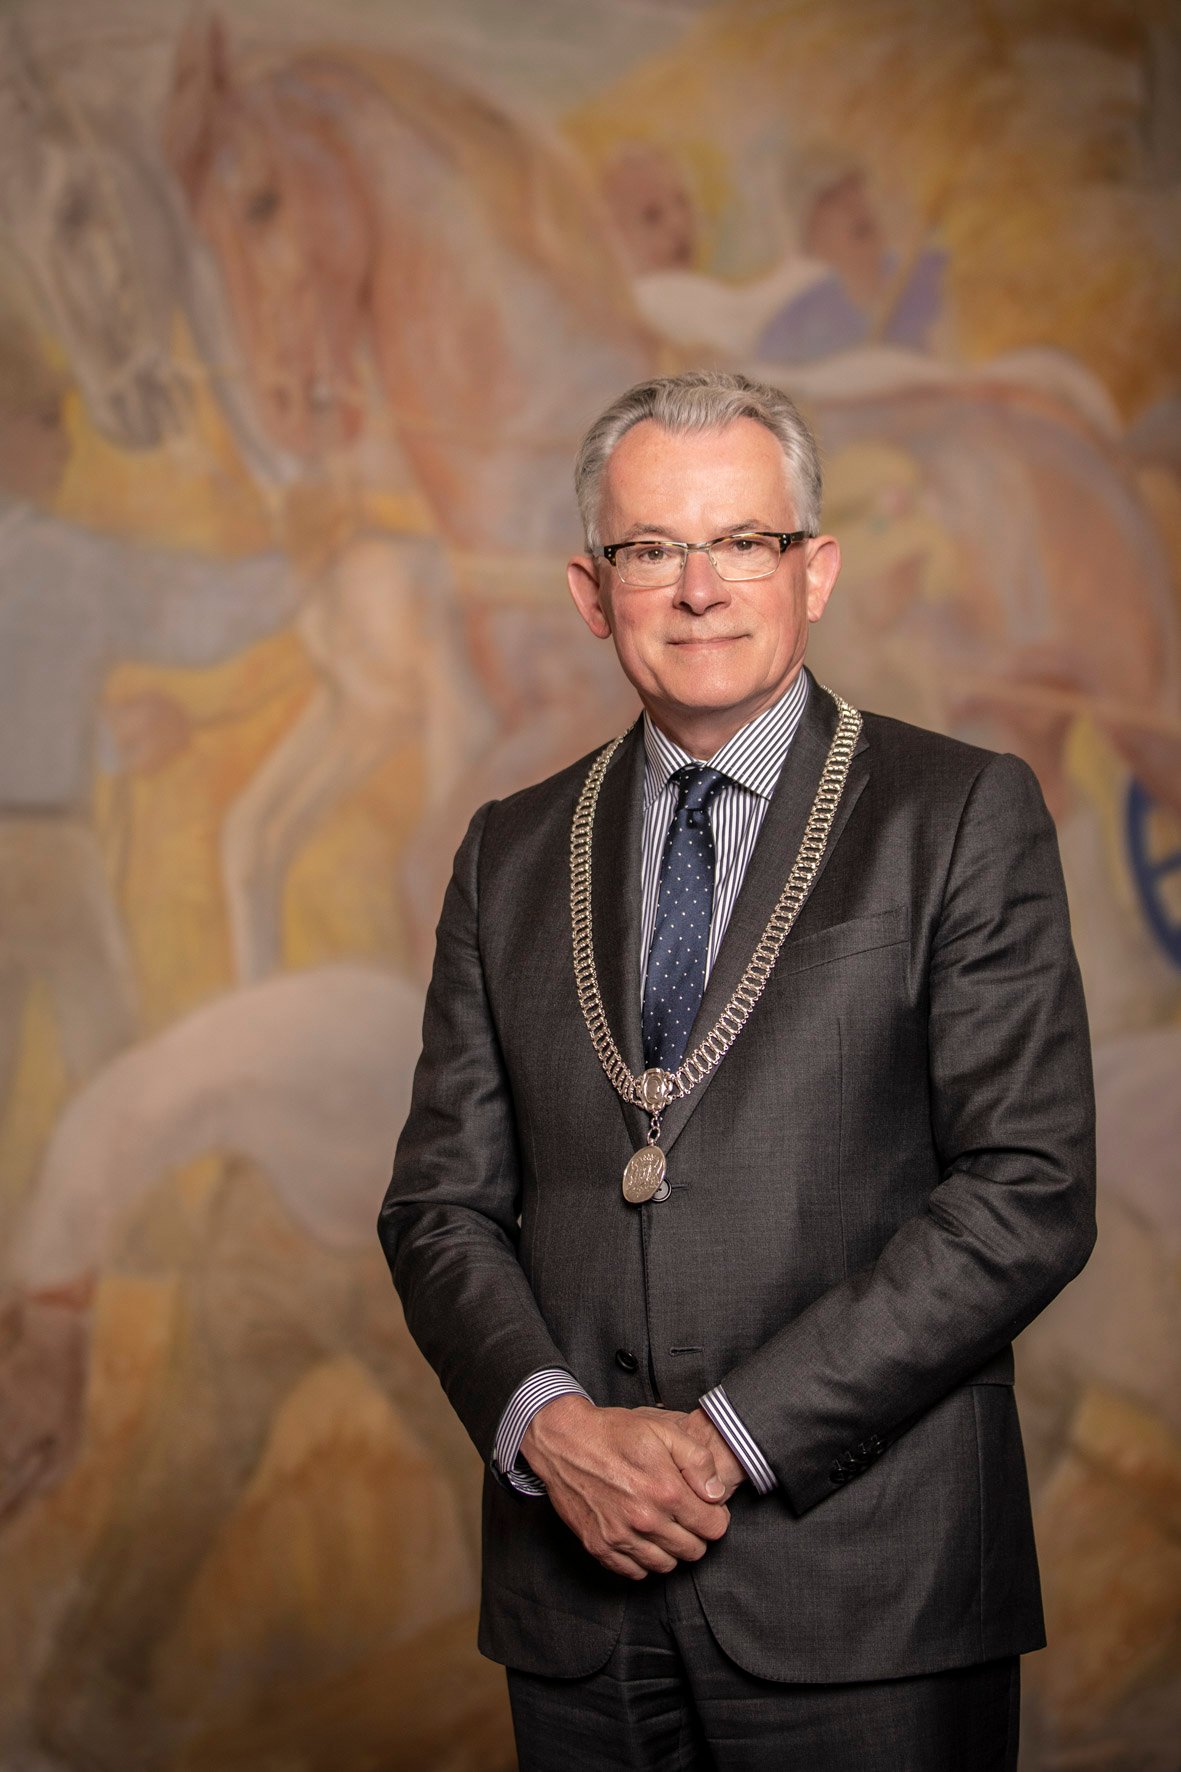 Portretfoto Burgemeester Koen Schuiling (met ambtsketting)